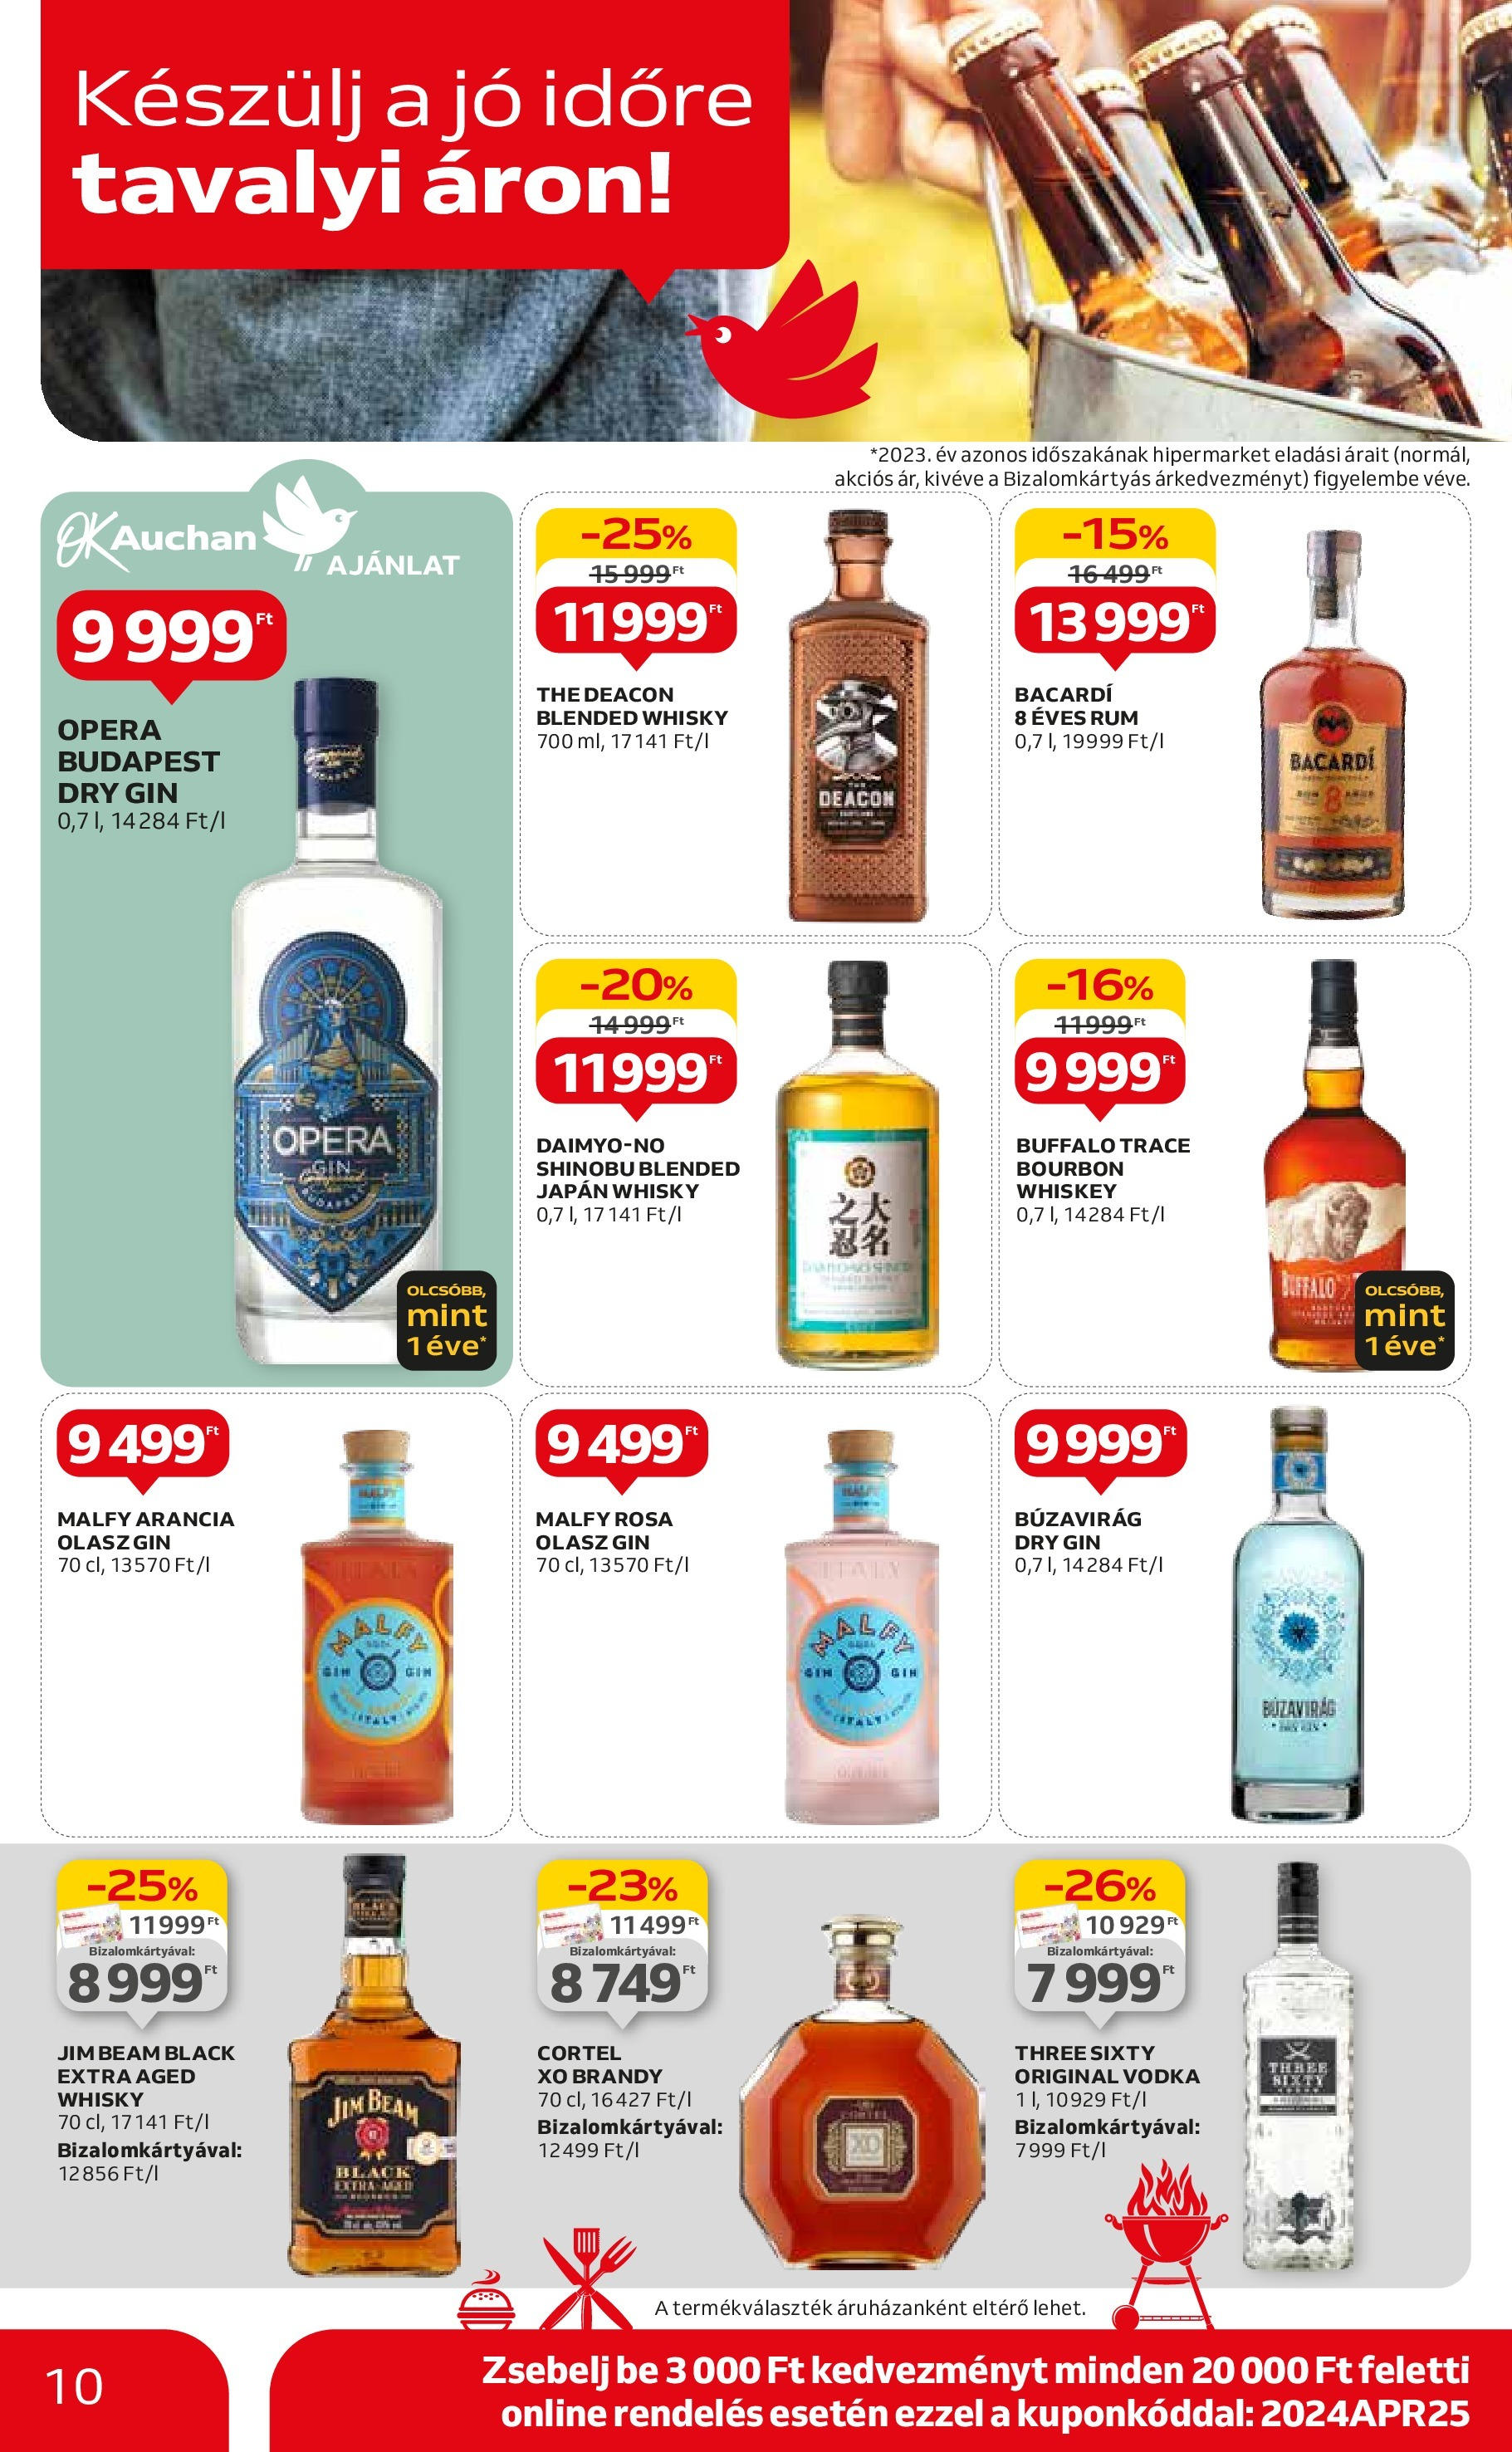 Auchan  Akciós újság - 2024.04.25. -tól/töl > akció, szórólap 🛍️ | Oldal: 10 | Termékek: Whiskey, Bourbon, Brandy, Gin